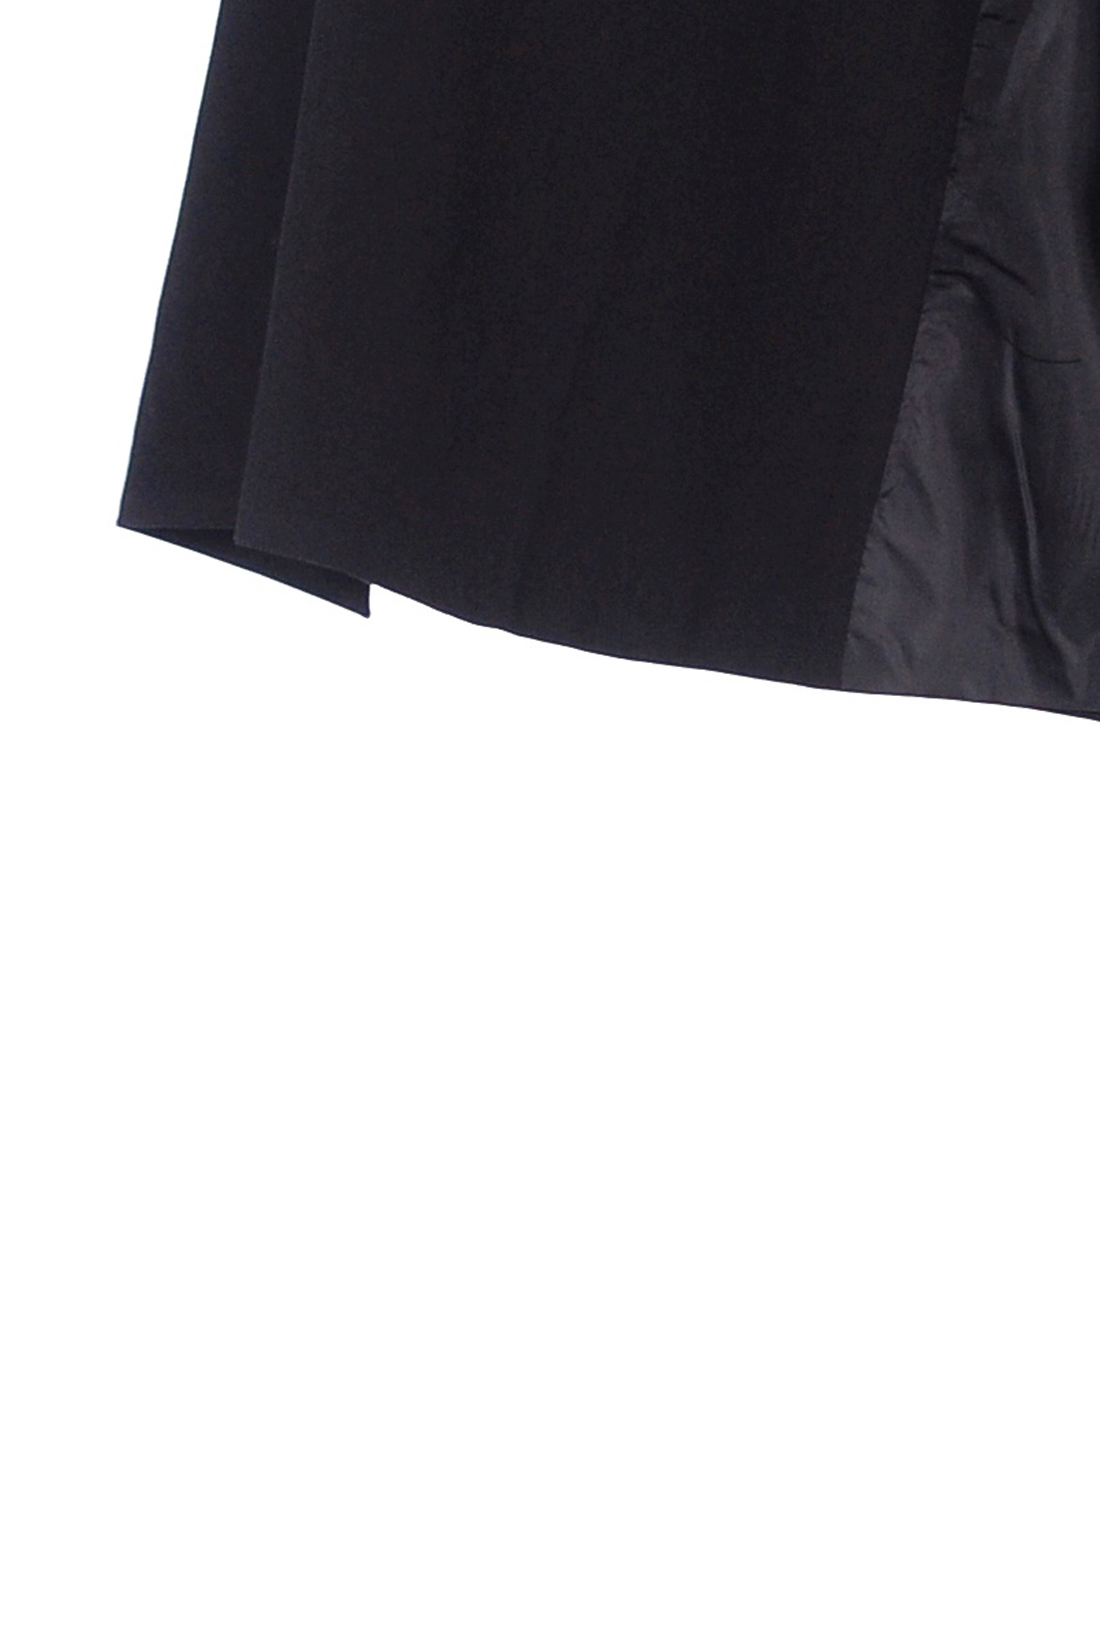 Жакет с поясом (арт. baon B128517), размер XS, цвет черный Жакет с поясом (арт. baon B128517) - фото 2